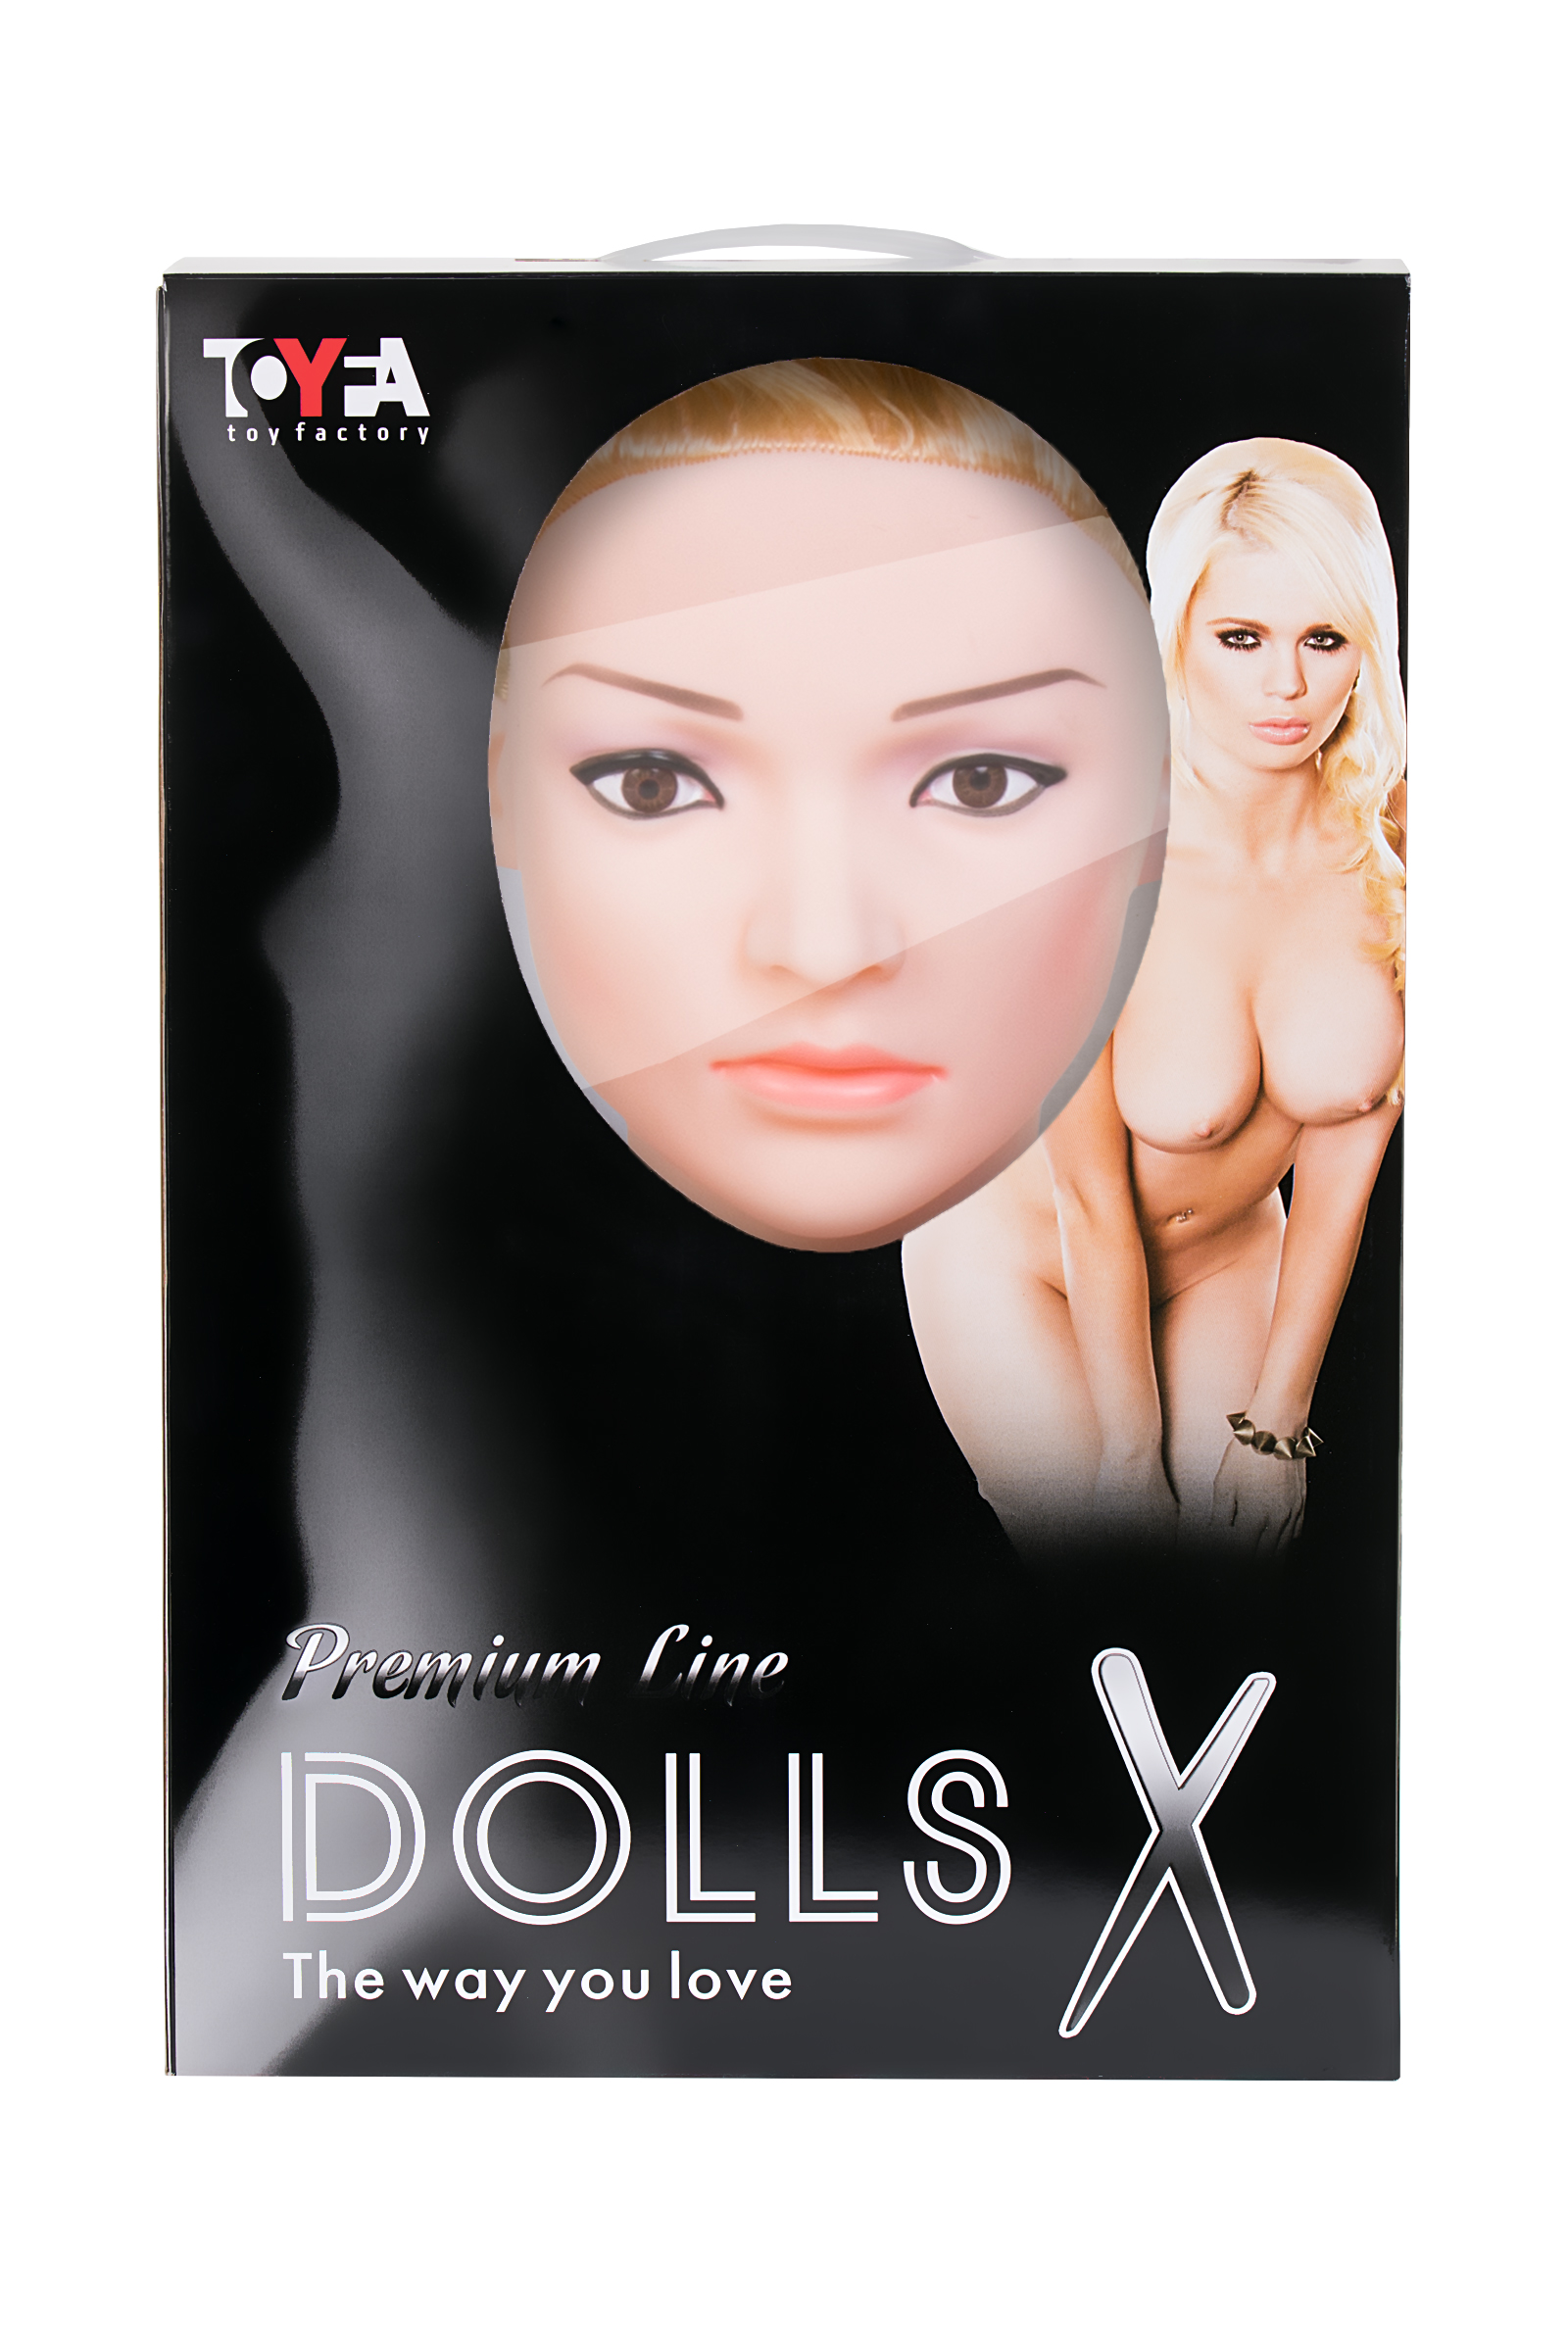 Кукла надувная Dolls-X by TOYF Liliana с реалистичной головой, блондинка, с двумя отверстиями. Фото N13